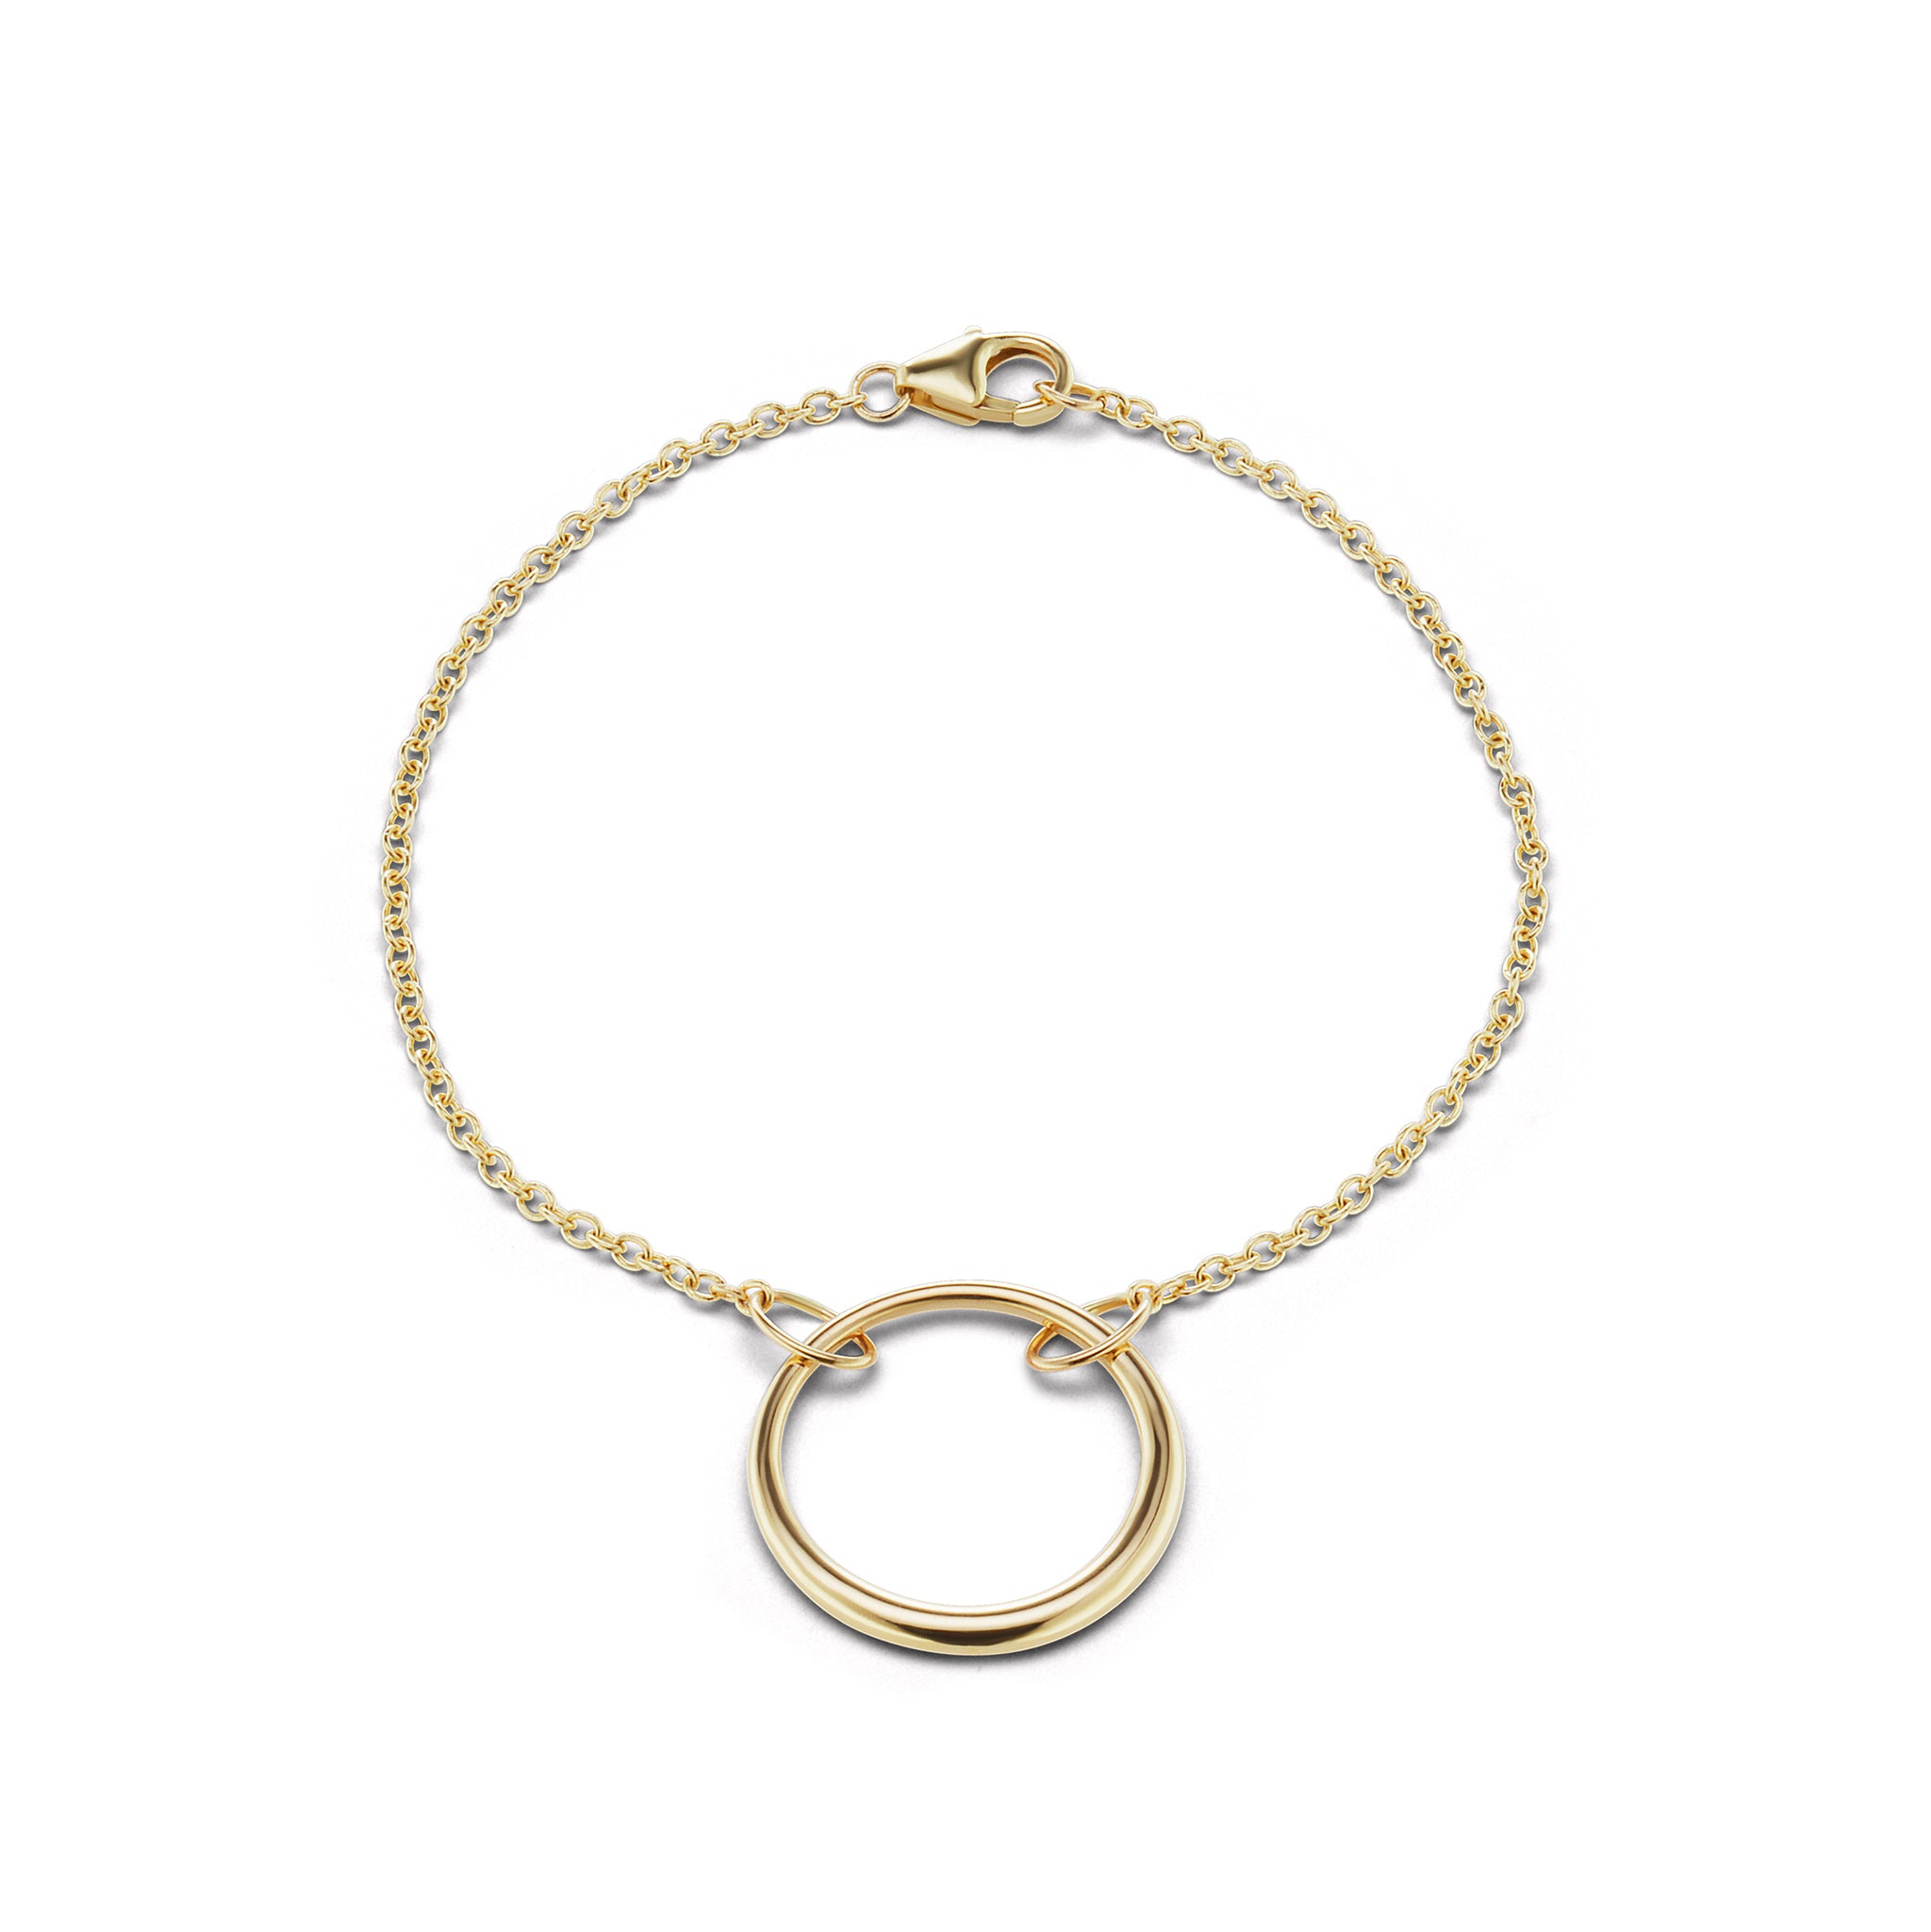 The Gold Loop Bracelet